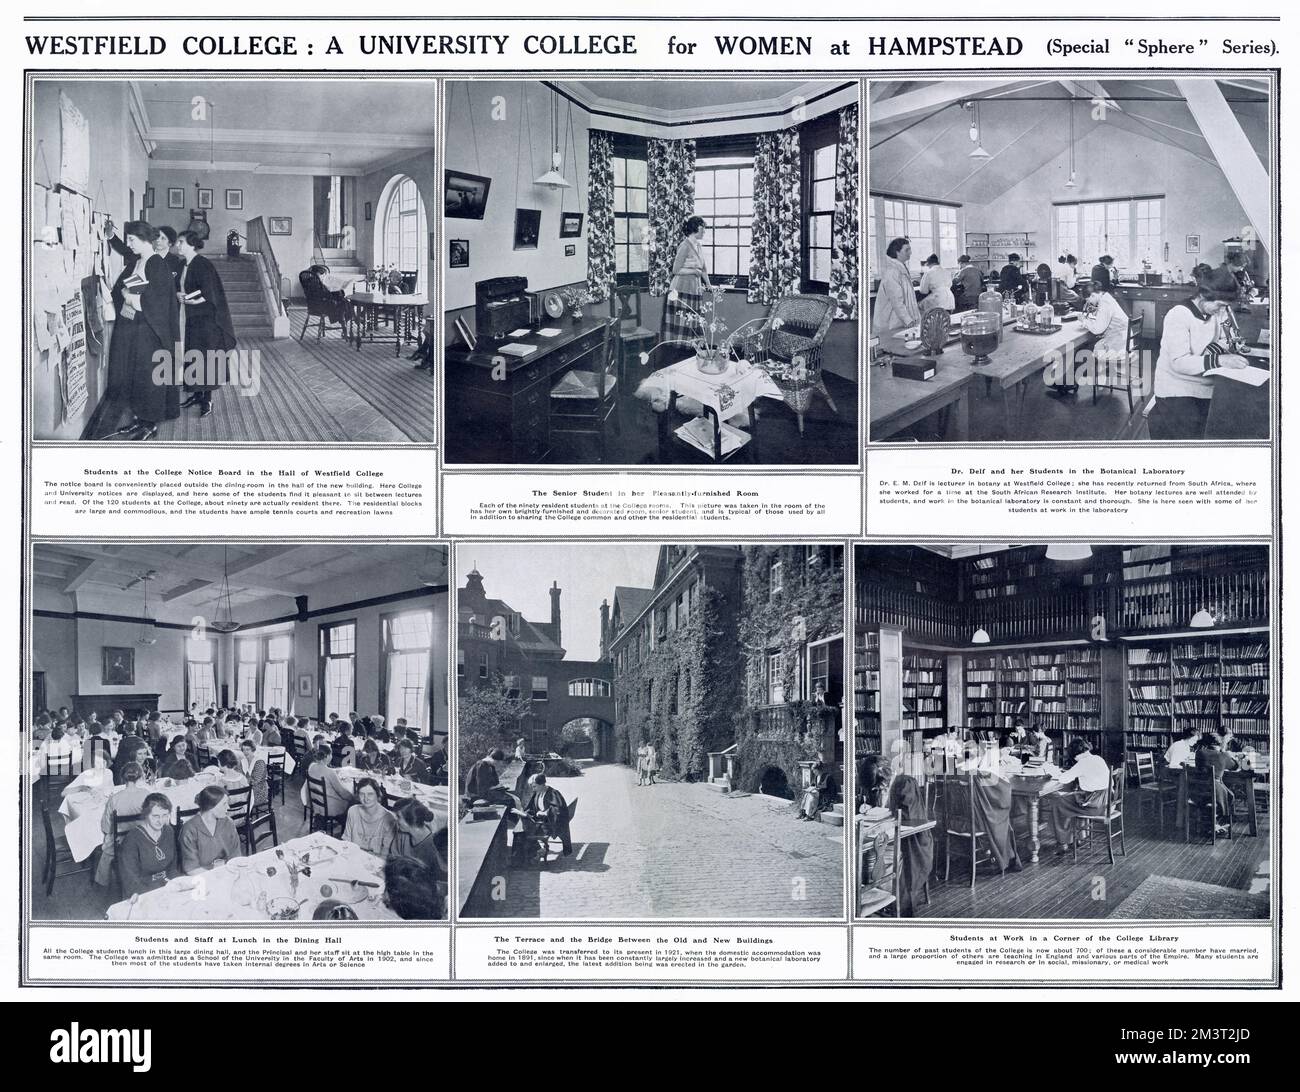 Westfield College, Hampstead - Ein University College für Frauen. Stockfoto